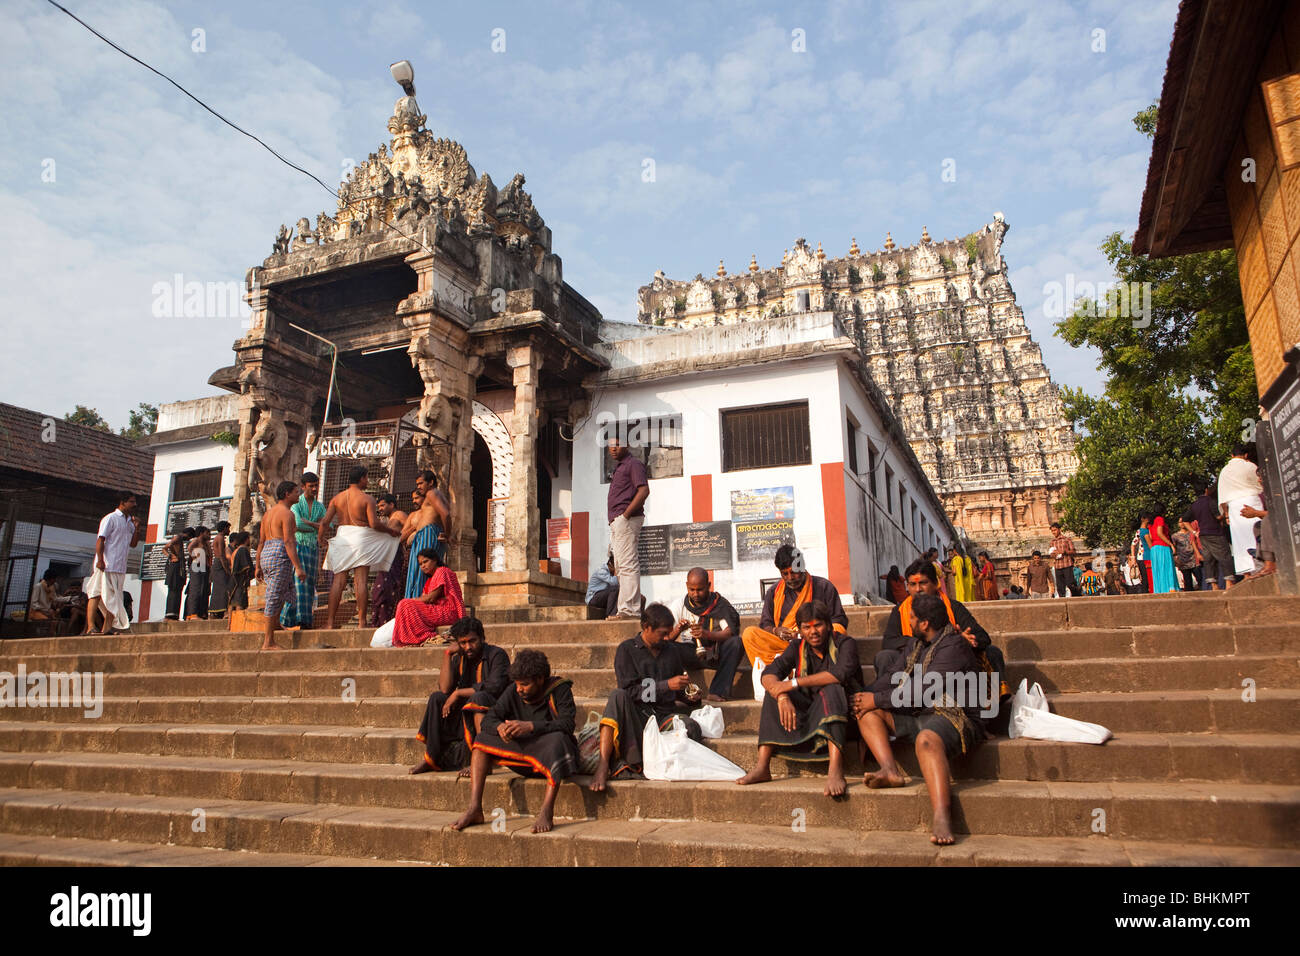 India, Kerala, Thiruvananthapuram, (Trivandrum), Sri Padmanabhaswamy Hindu Temple pilgrims at entrance Stock Photo